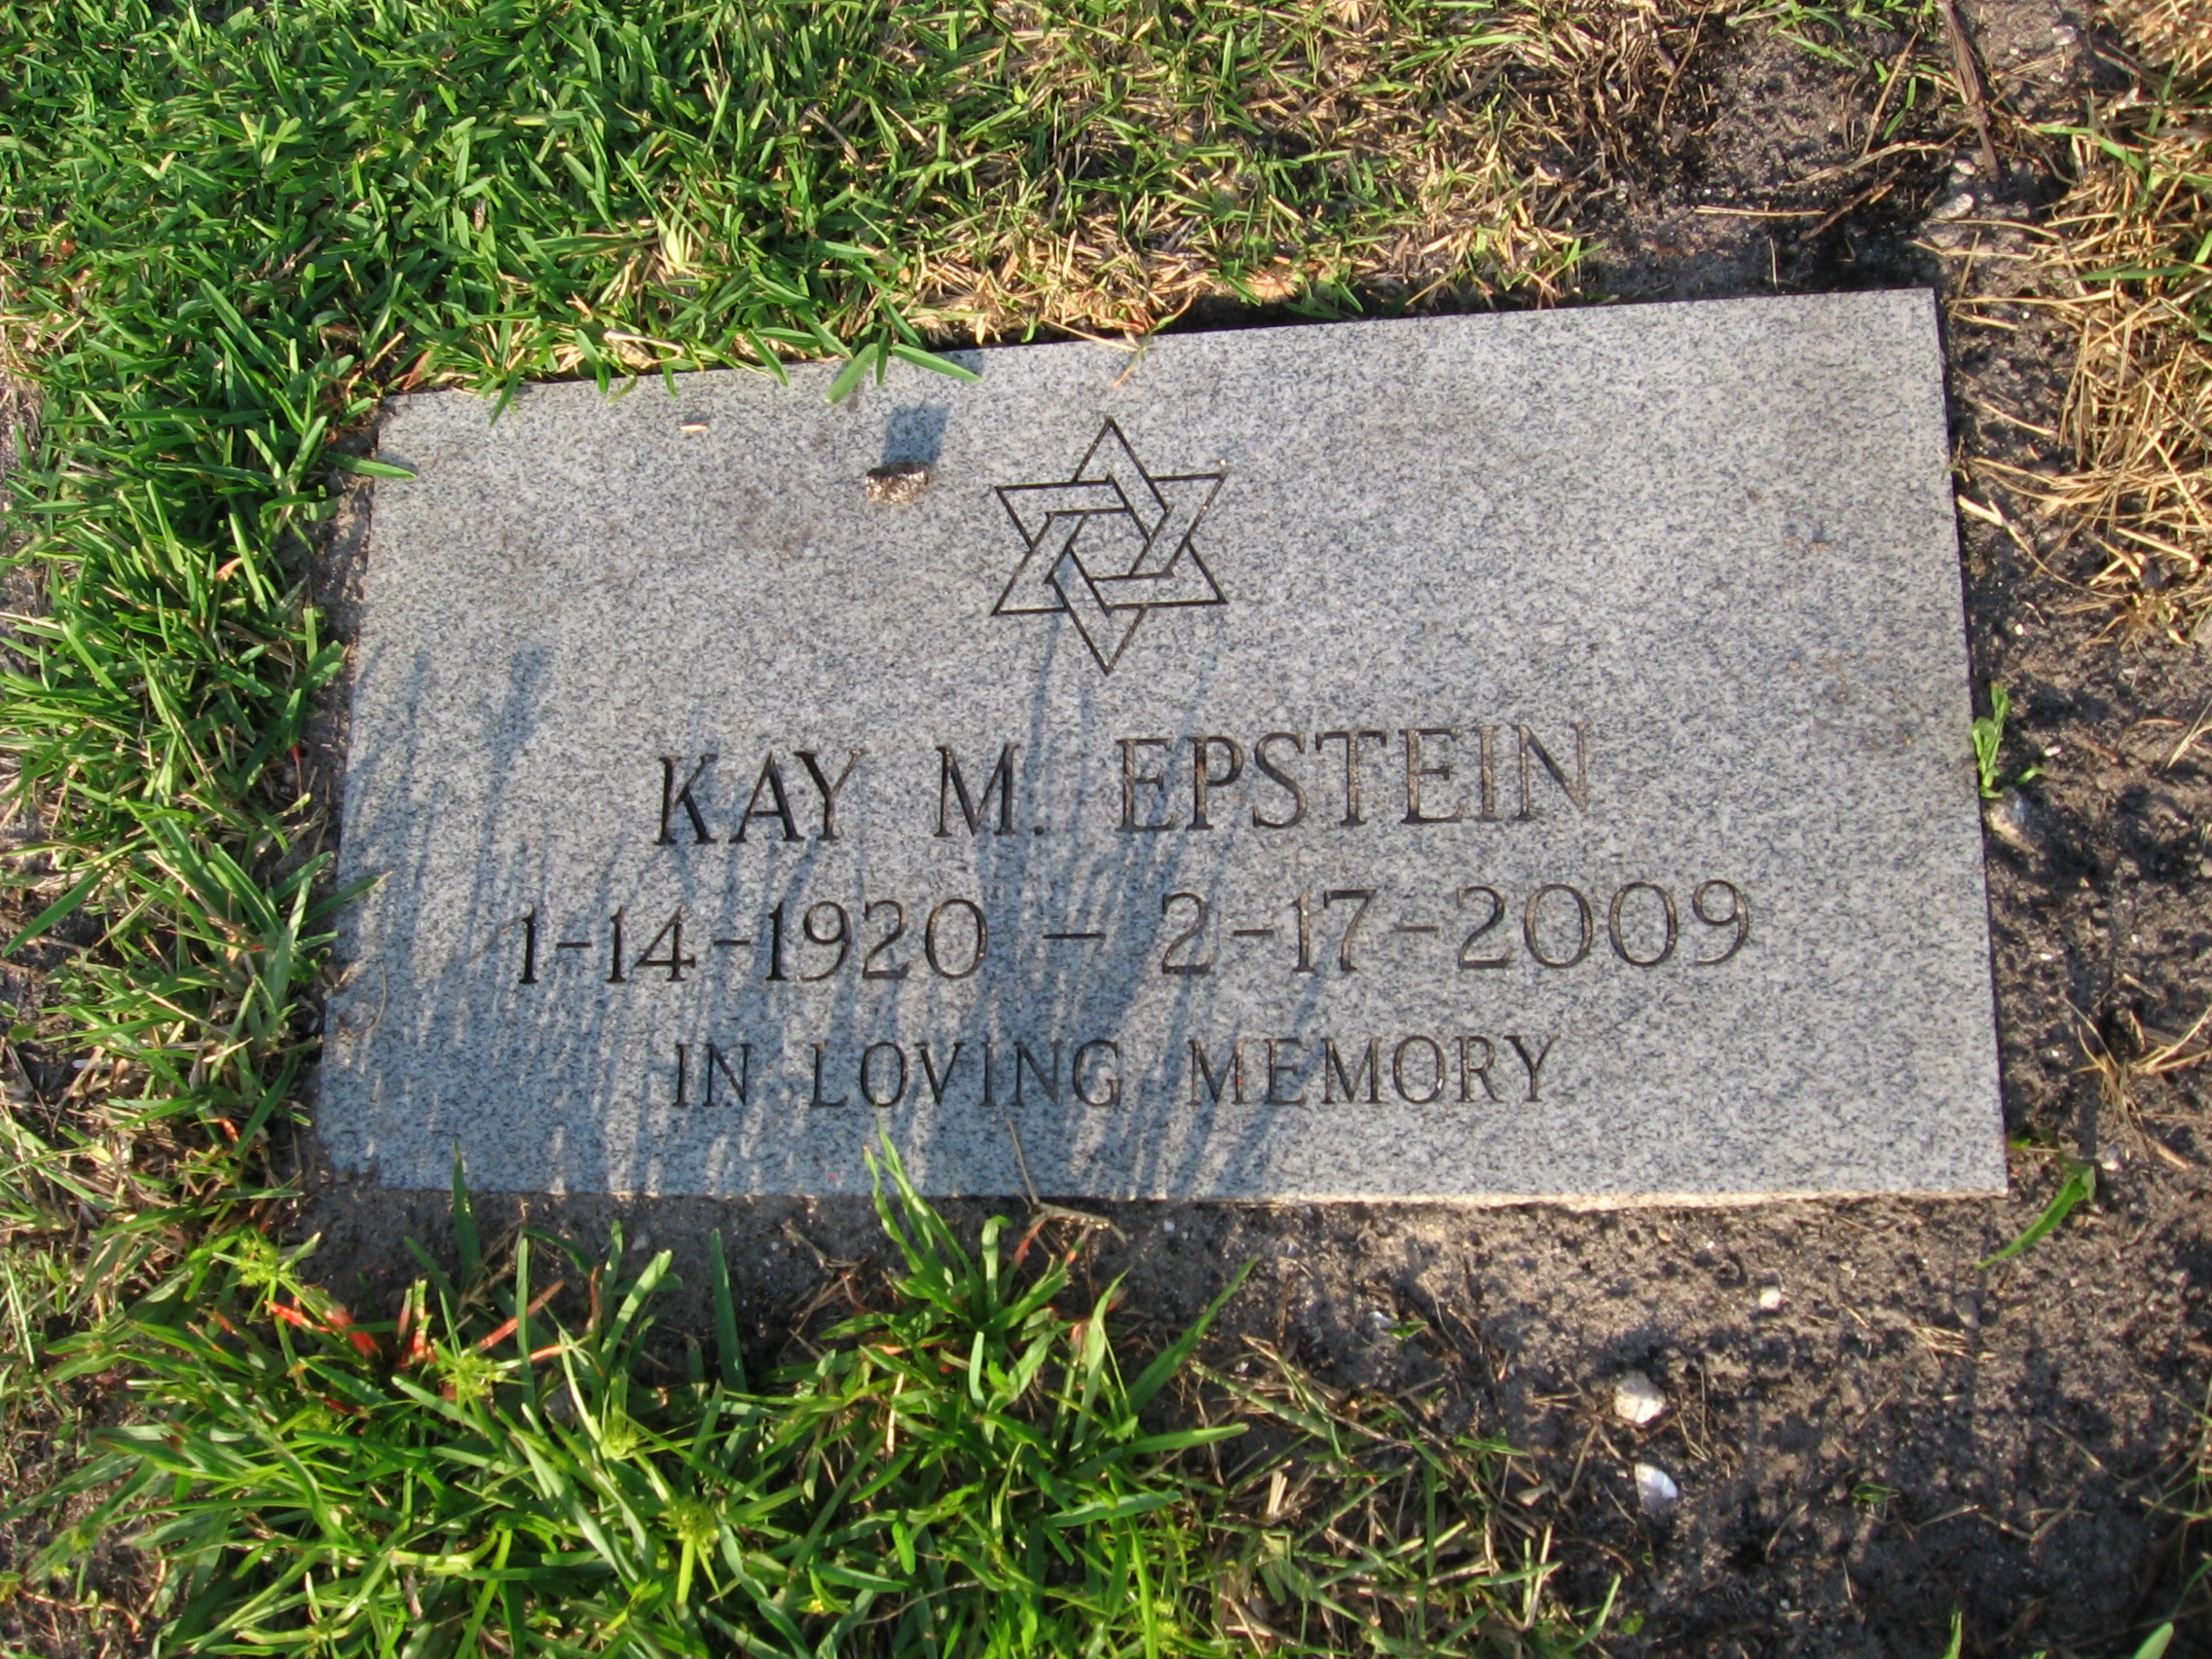 Kay M Epstein